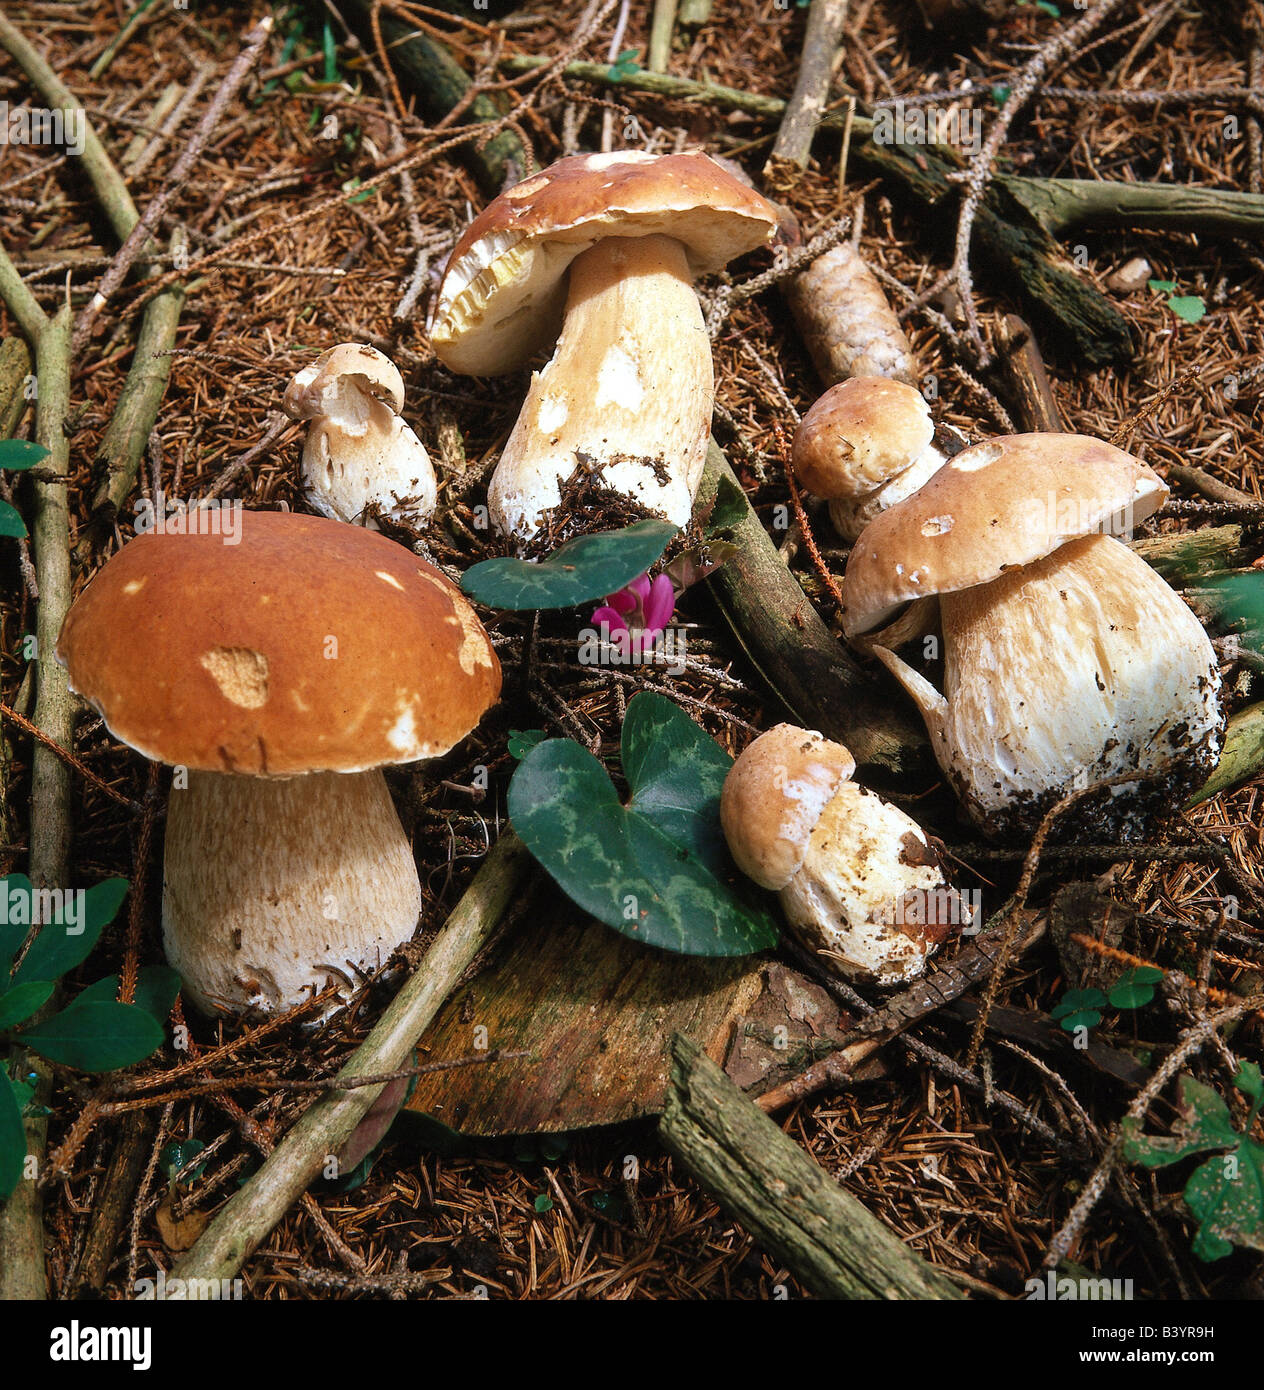 botany, fungi, Boletus, Cep, (Boletus edulis), several mushrooms on woodground, eatable, edible mushroom, Boletus crassus, Bolet Stock Photo